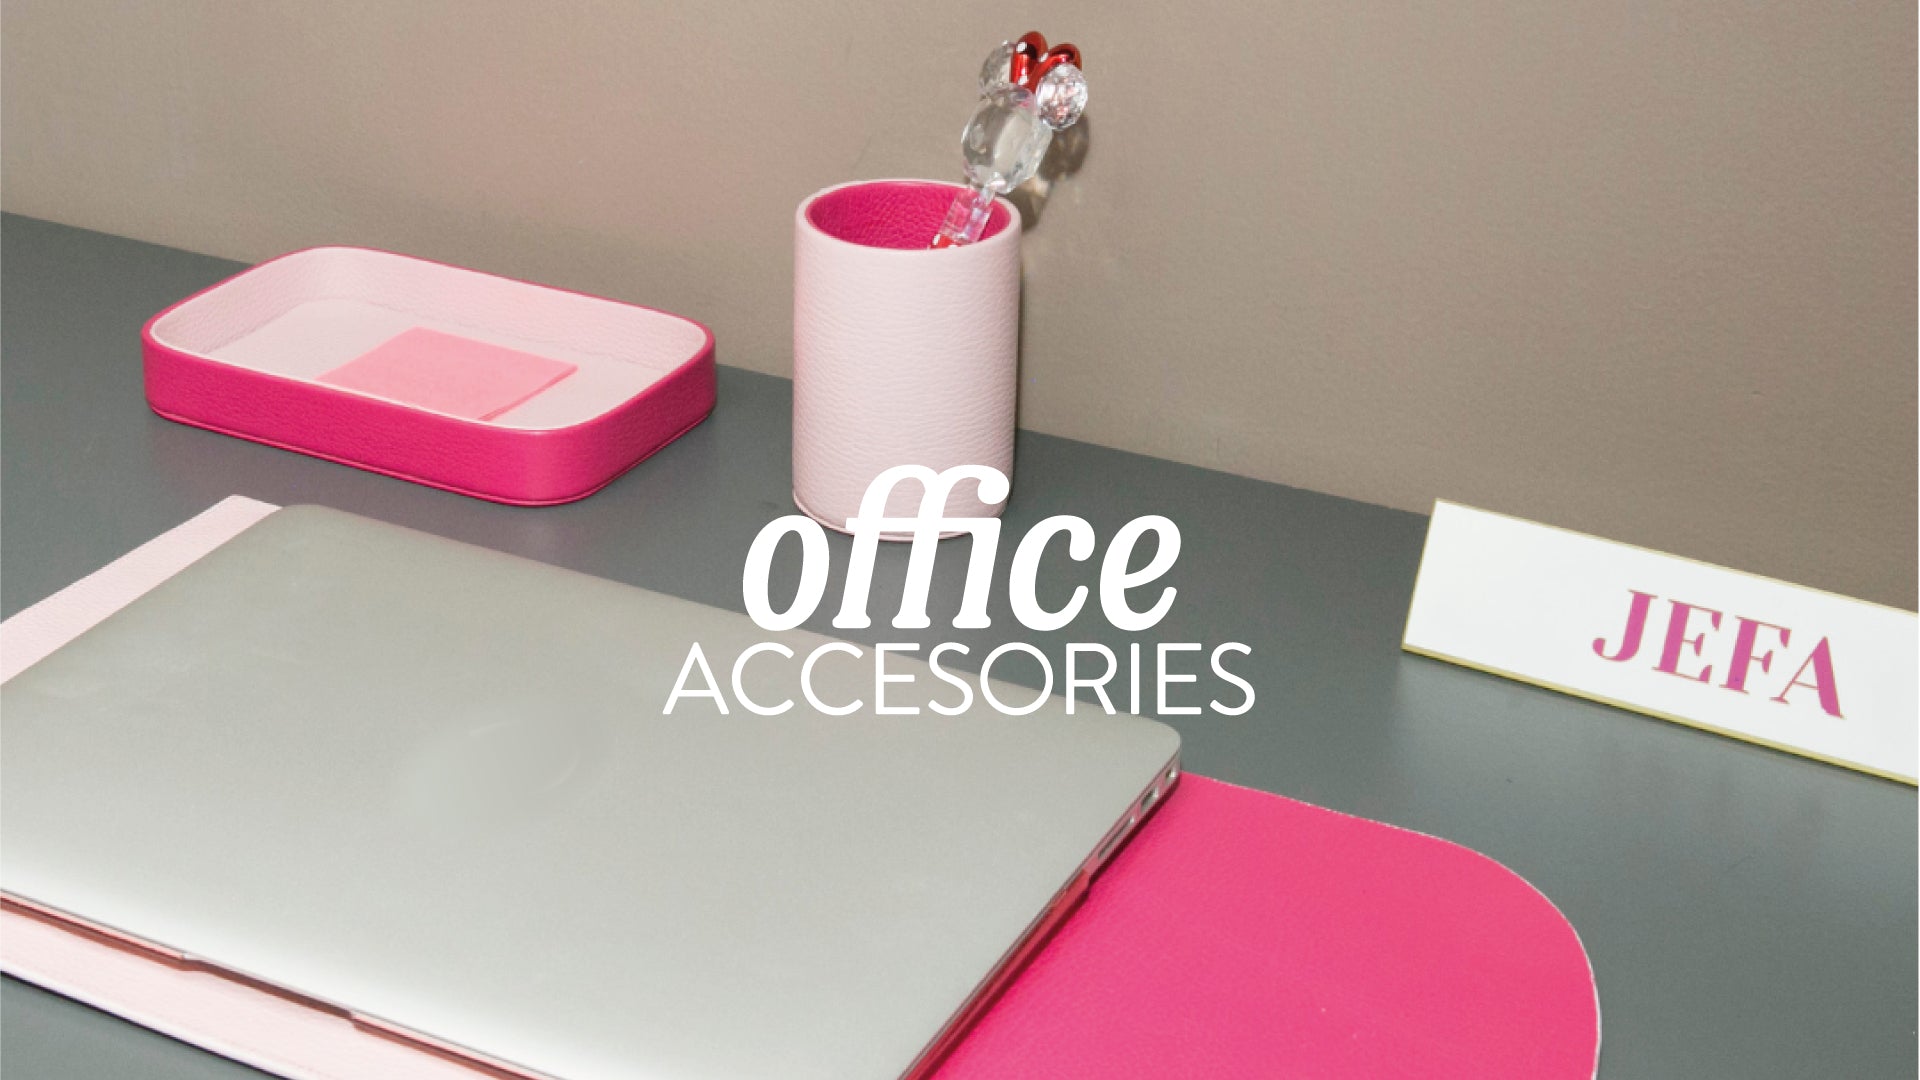 Desk accessories